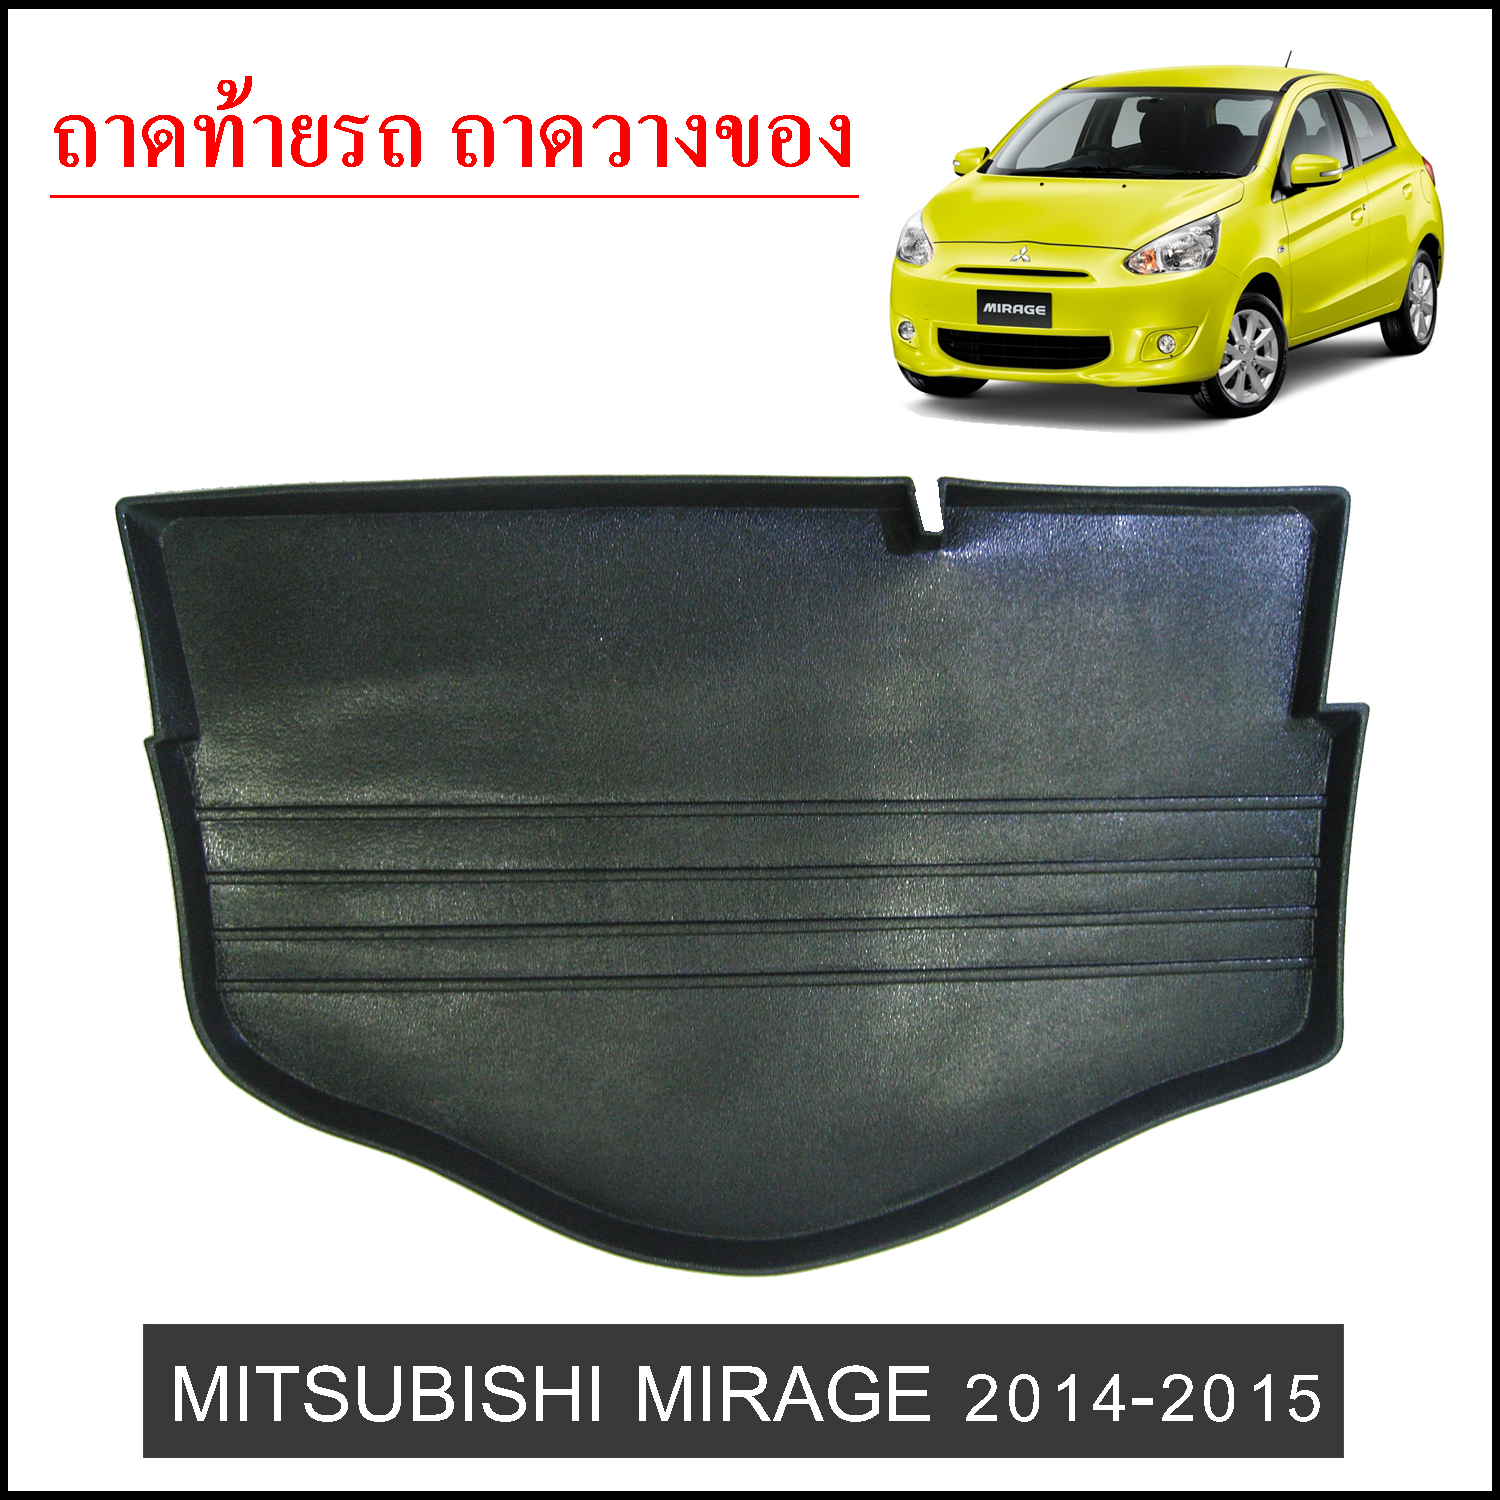 ถาดท้ายวางของ Mitsubishi Mirage 2014-2015